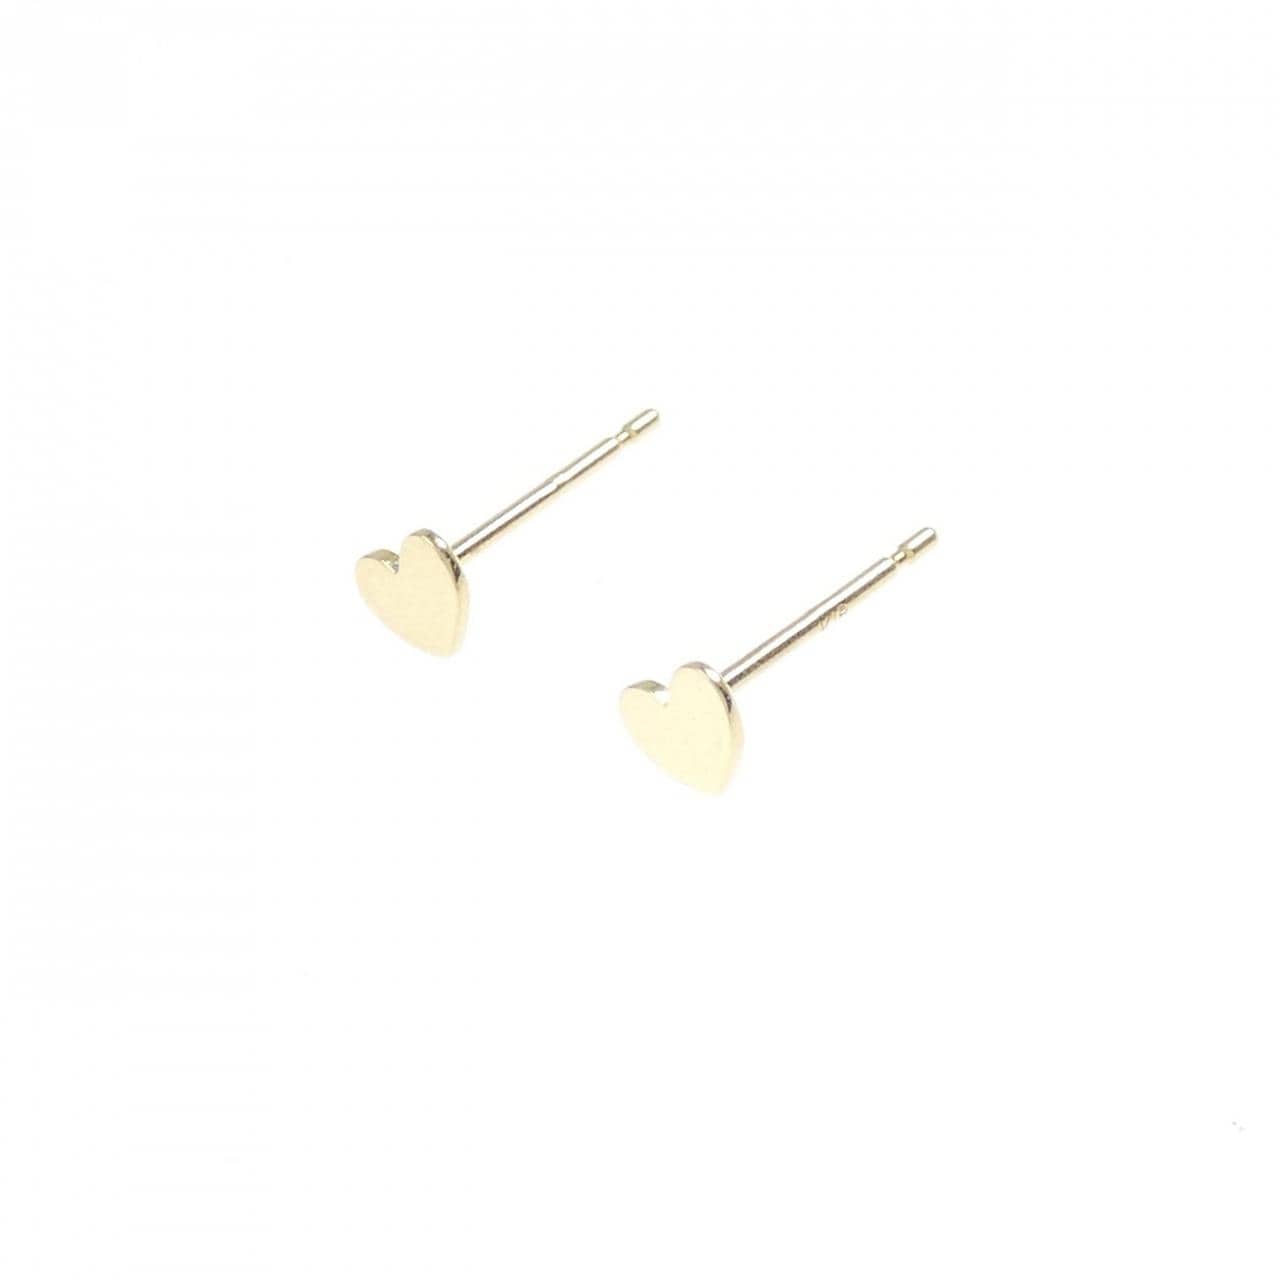 K18YG heart earrings